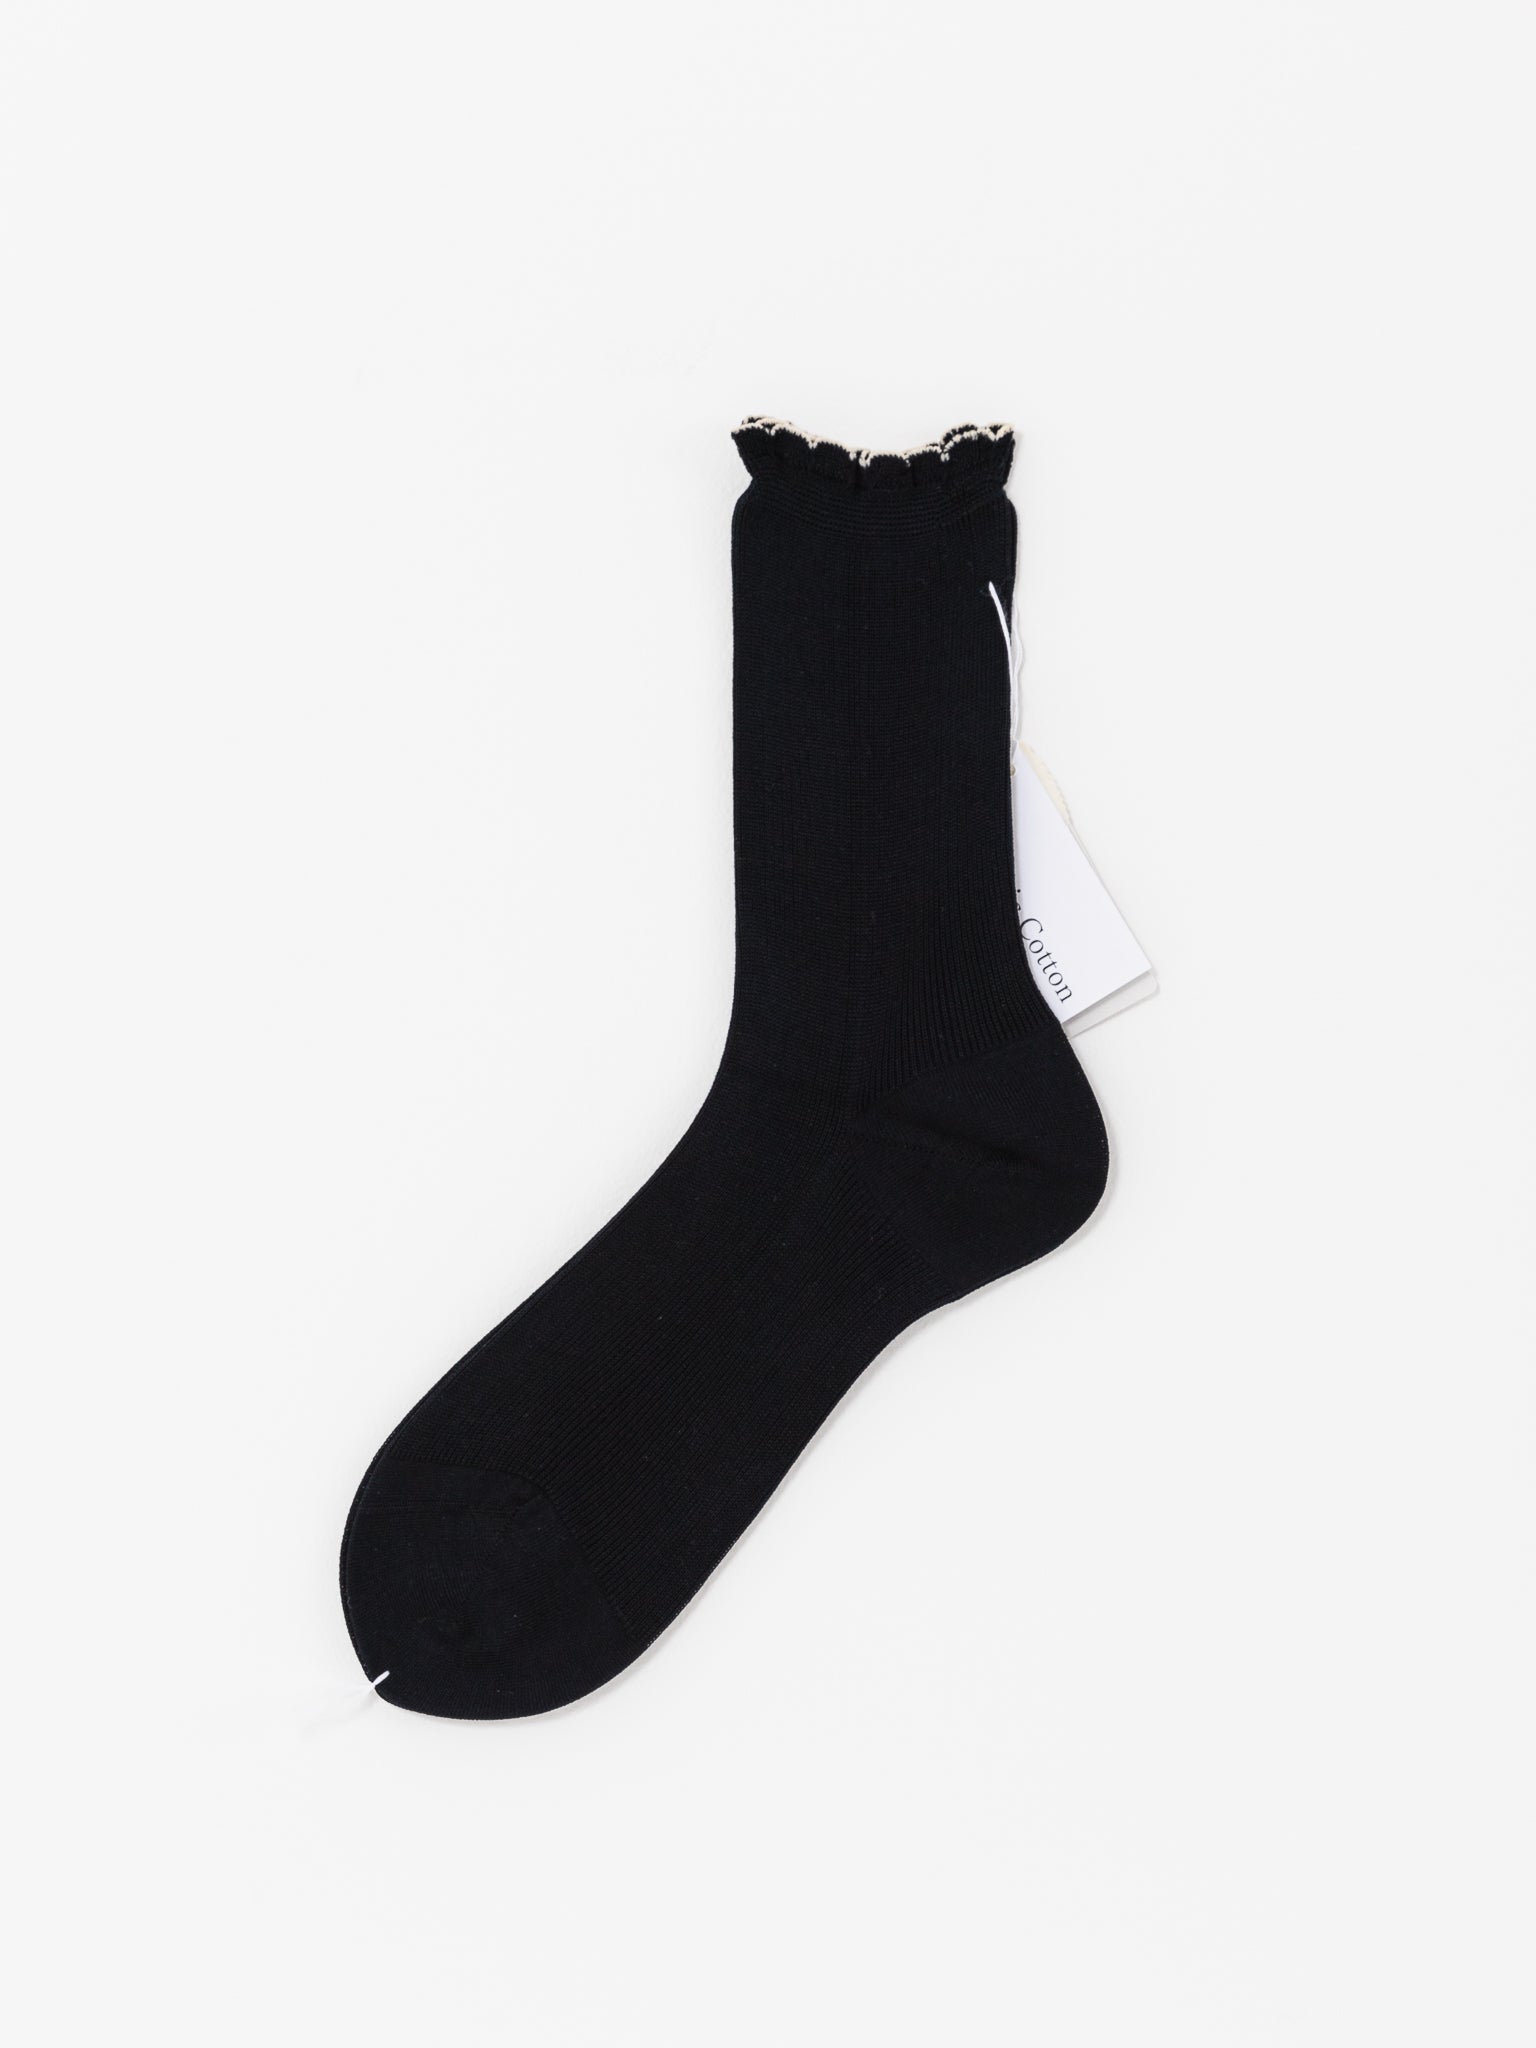 Antipast Solid Rib Socks, Black - Worthwhile